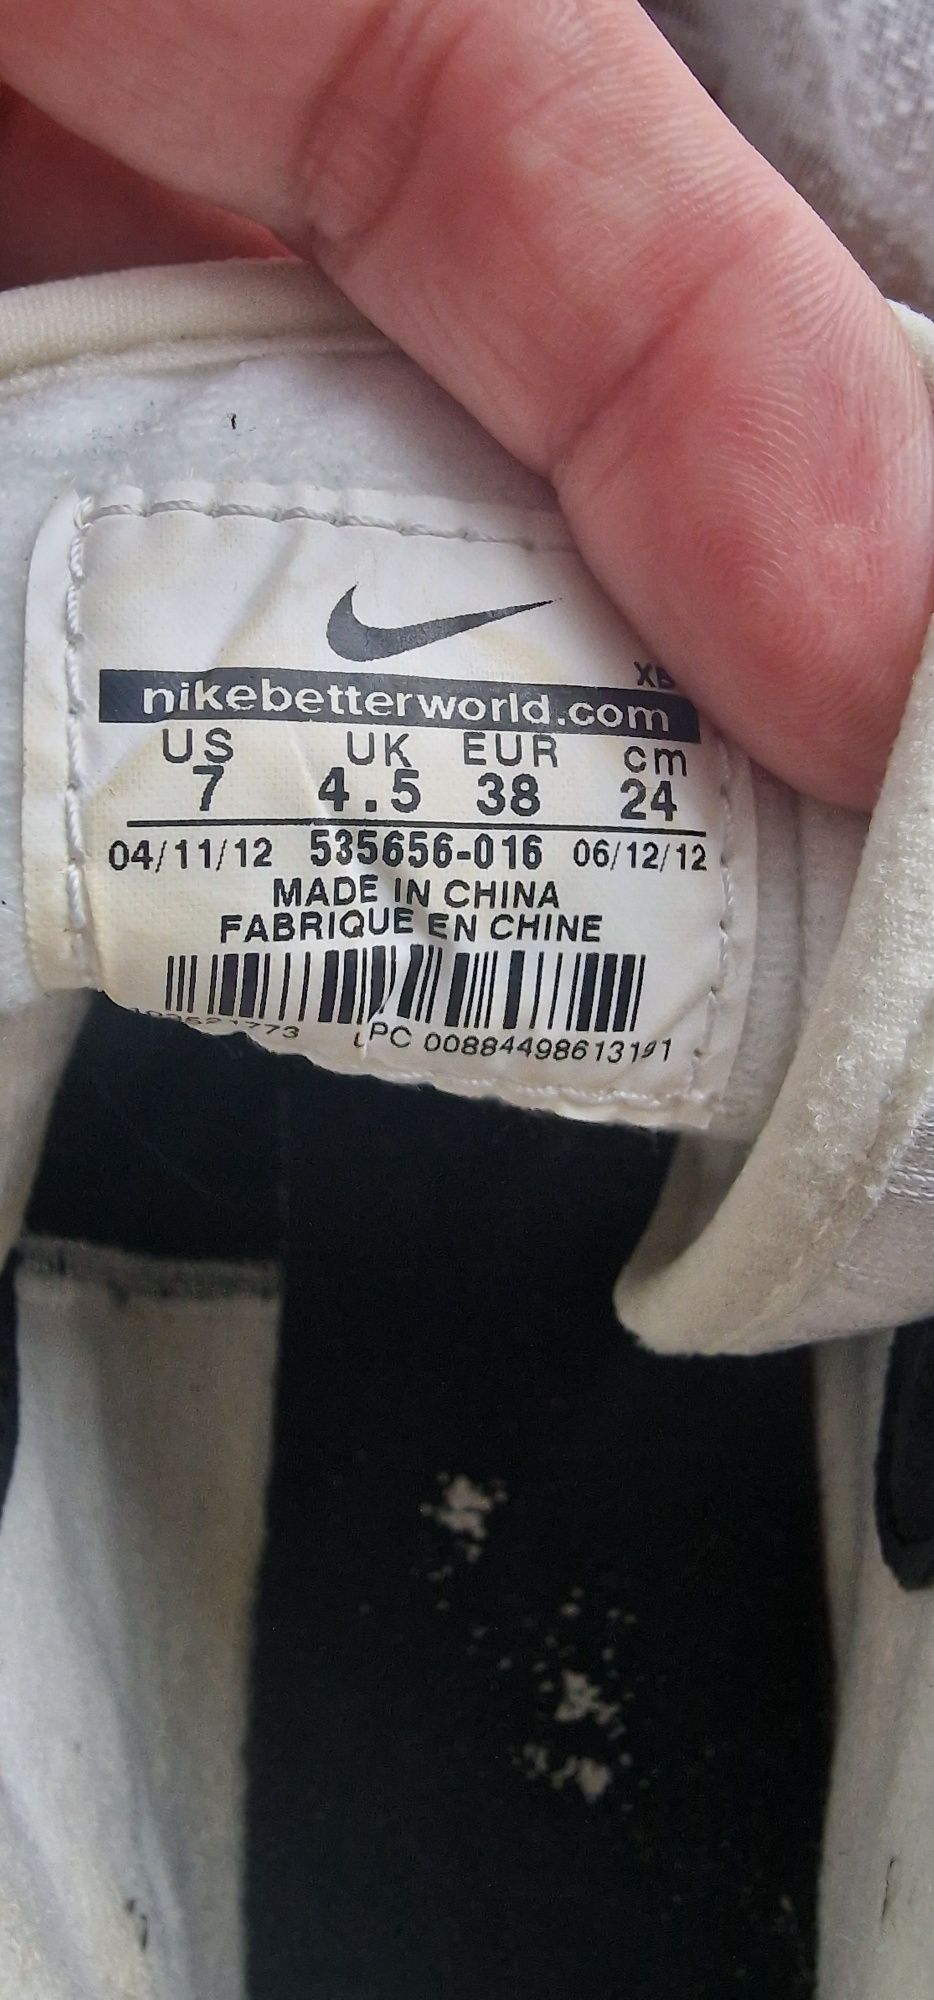 Nike Hally Hoop rozmiar 38 buty sportowe damskie